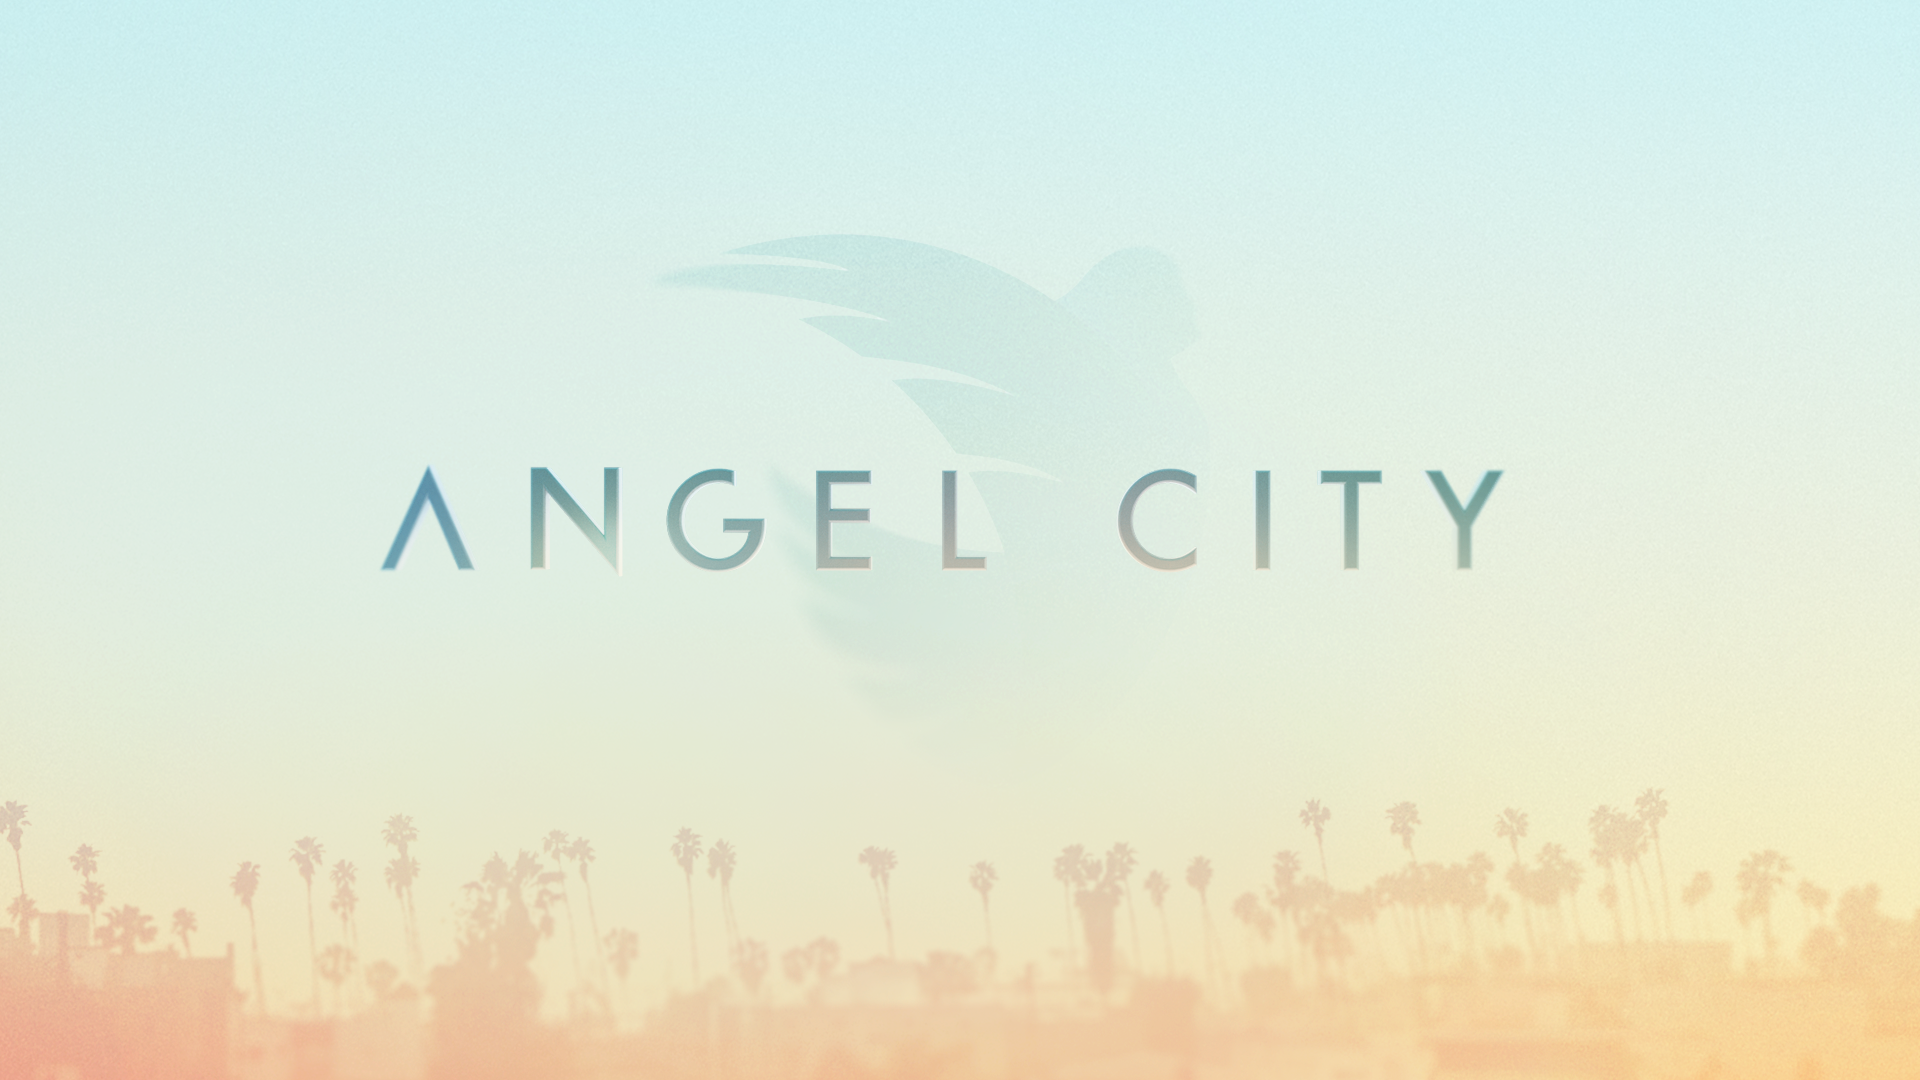 Angel-city-v14-01.png